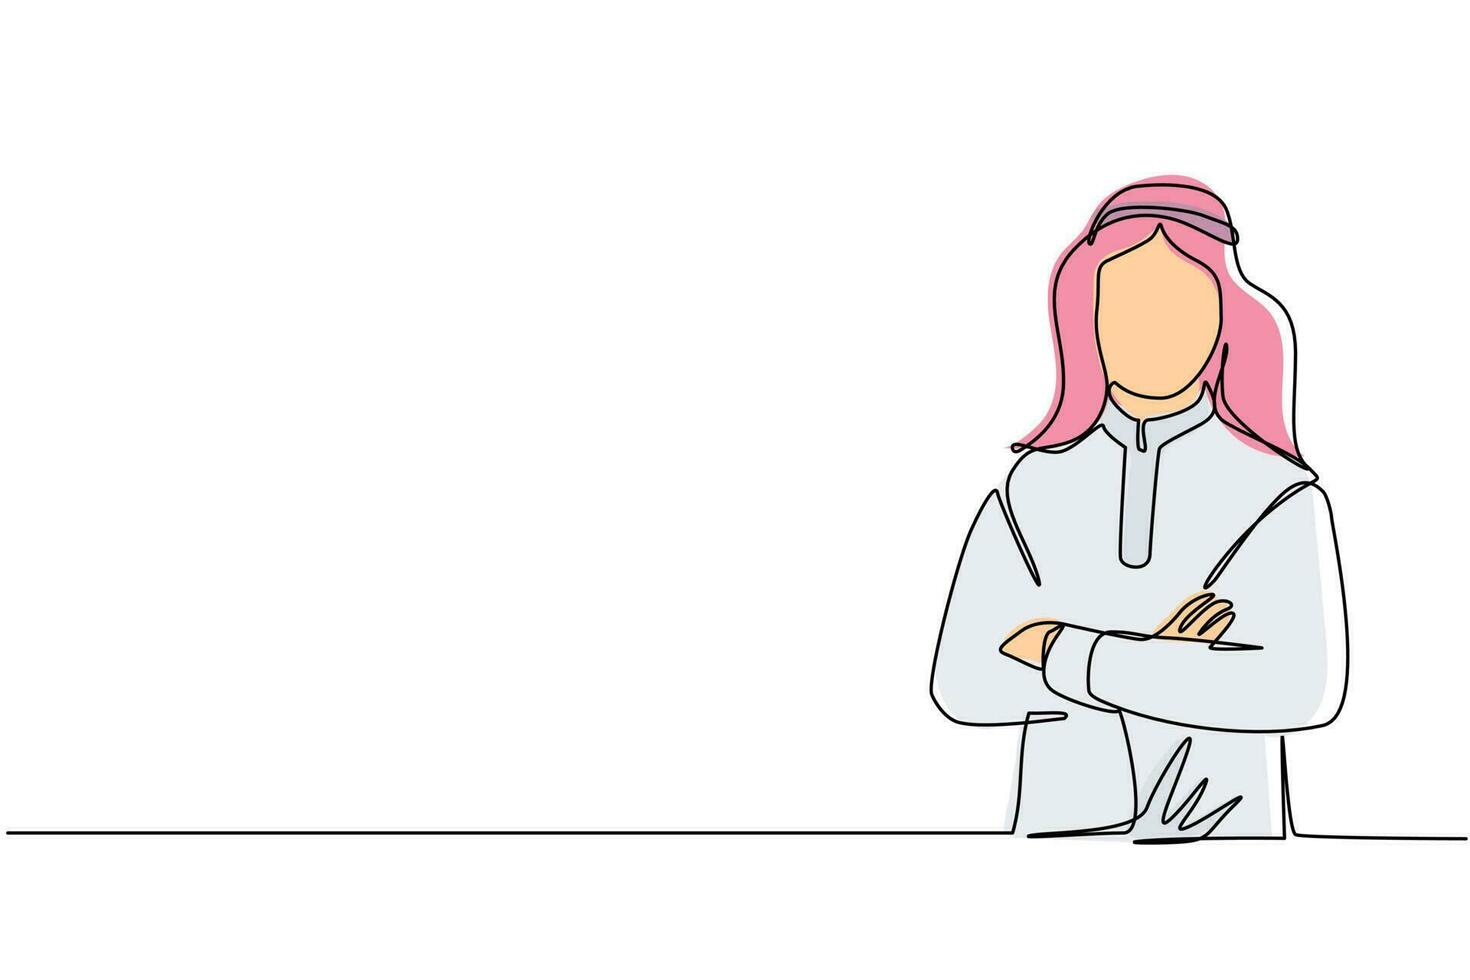 enda kontinuerlig linjeteckning leende självsäker arabisk man i traditionella kläder, hålla armarna i kors. aktiv affärsman stående med korslagda armar poserar. en rad rita design vektorillustration vektor